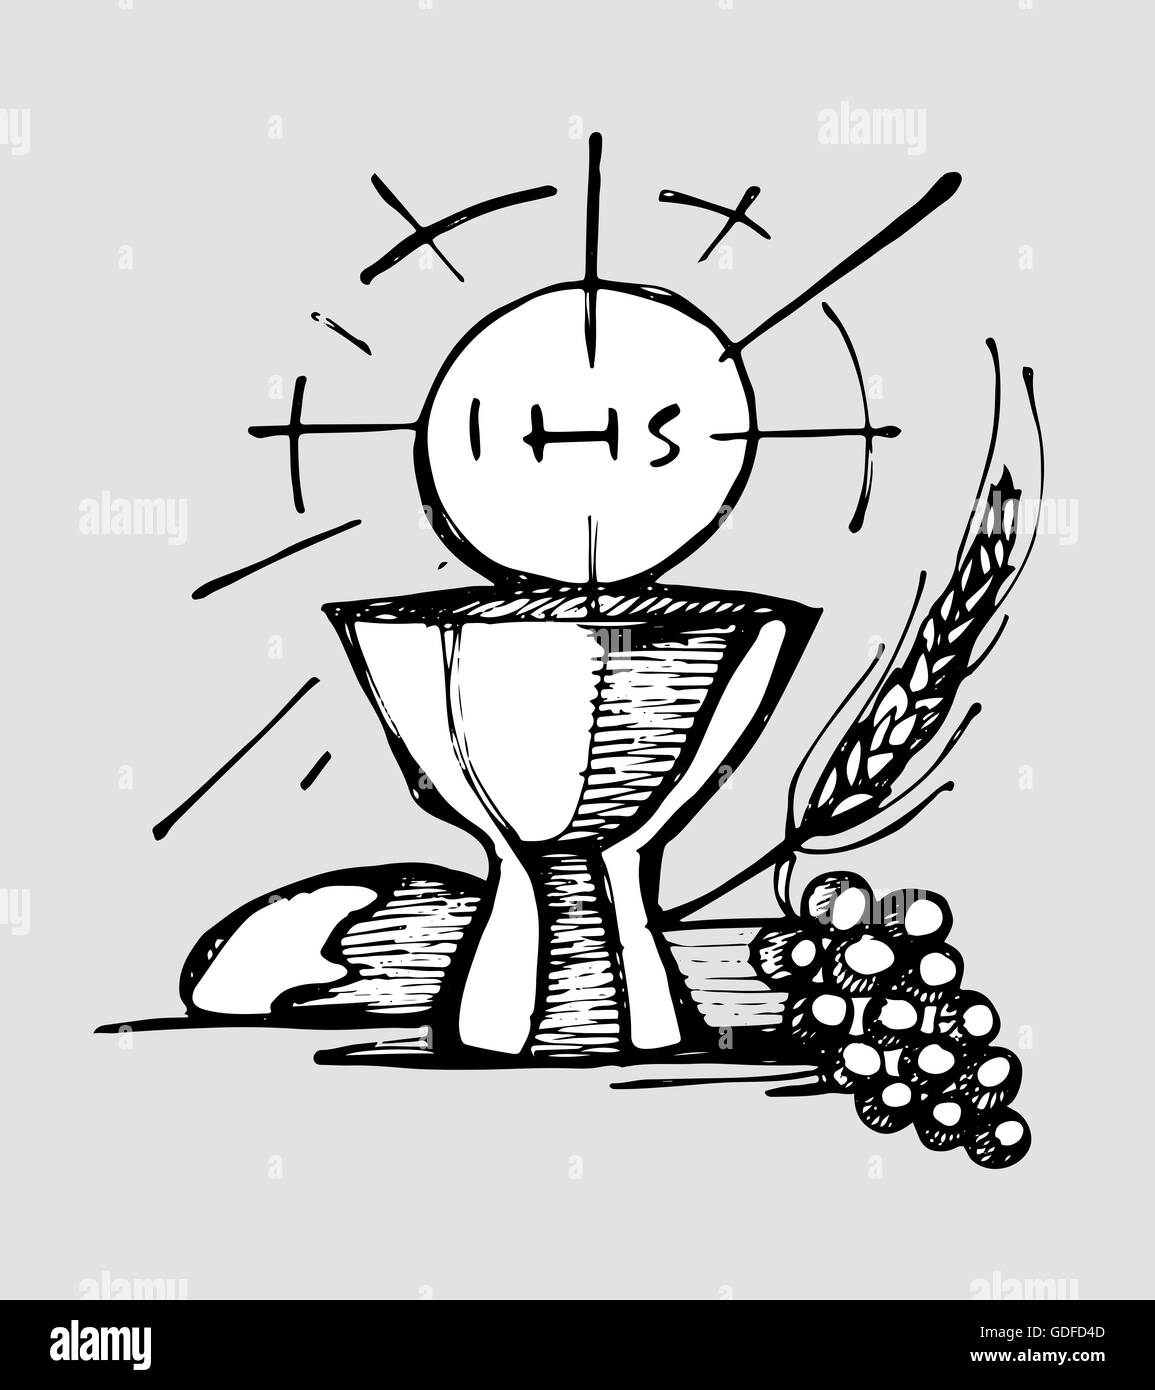 Disegnata a mano immagine o disegno di una tazza, un Host, pane, uva e frumento, rappresentando Eucaristia Sacramento Cattolica Foto Stock